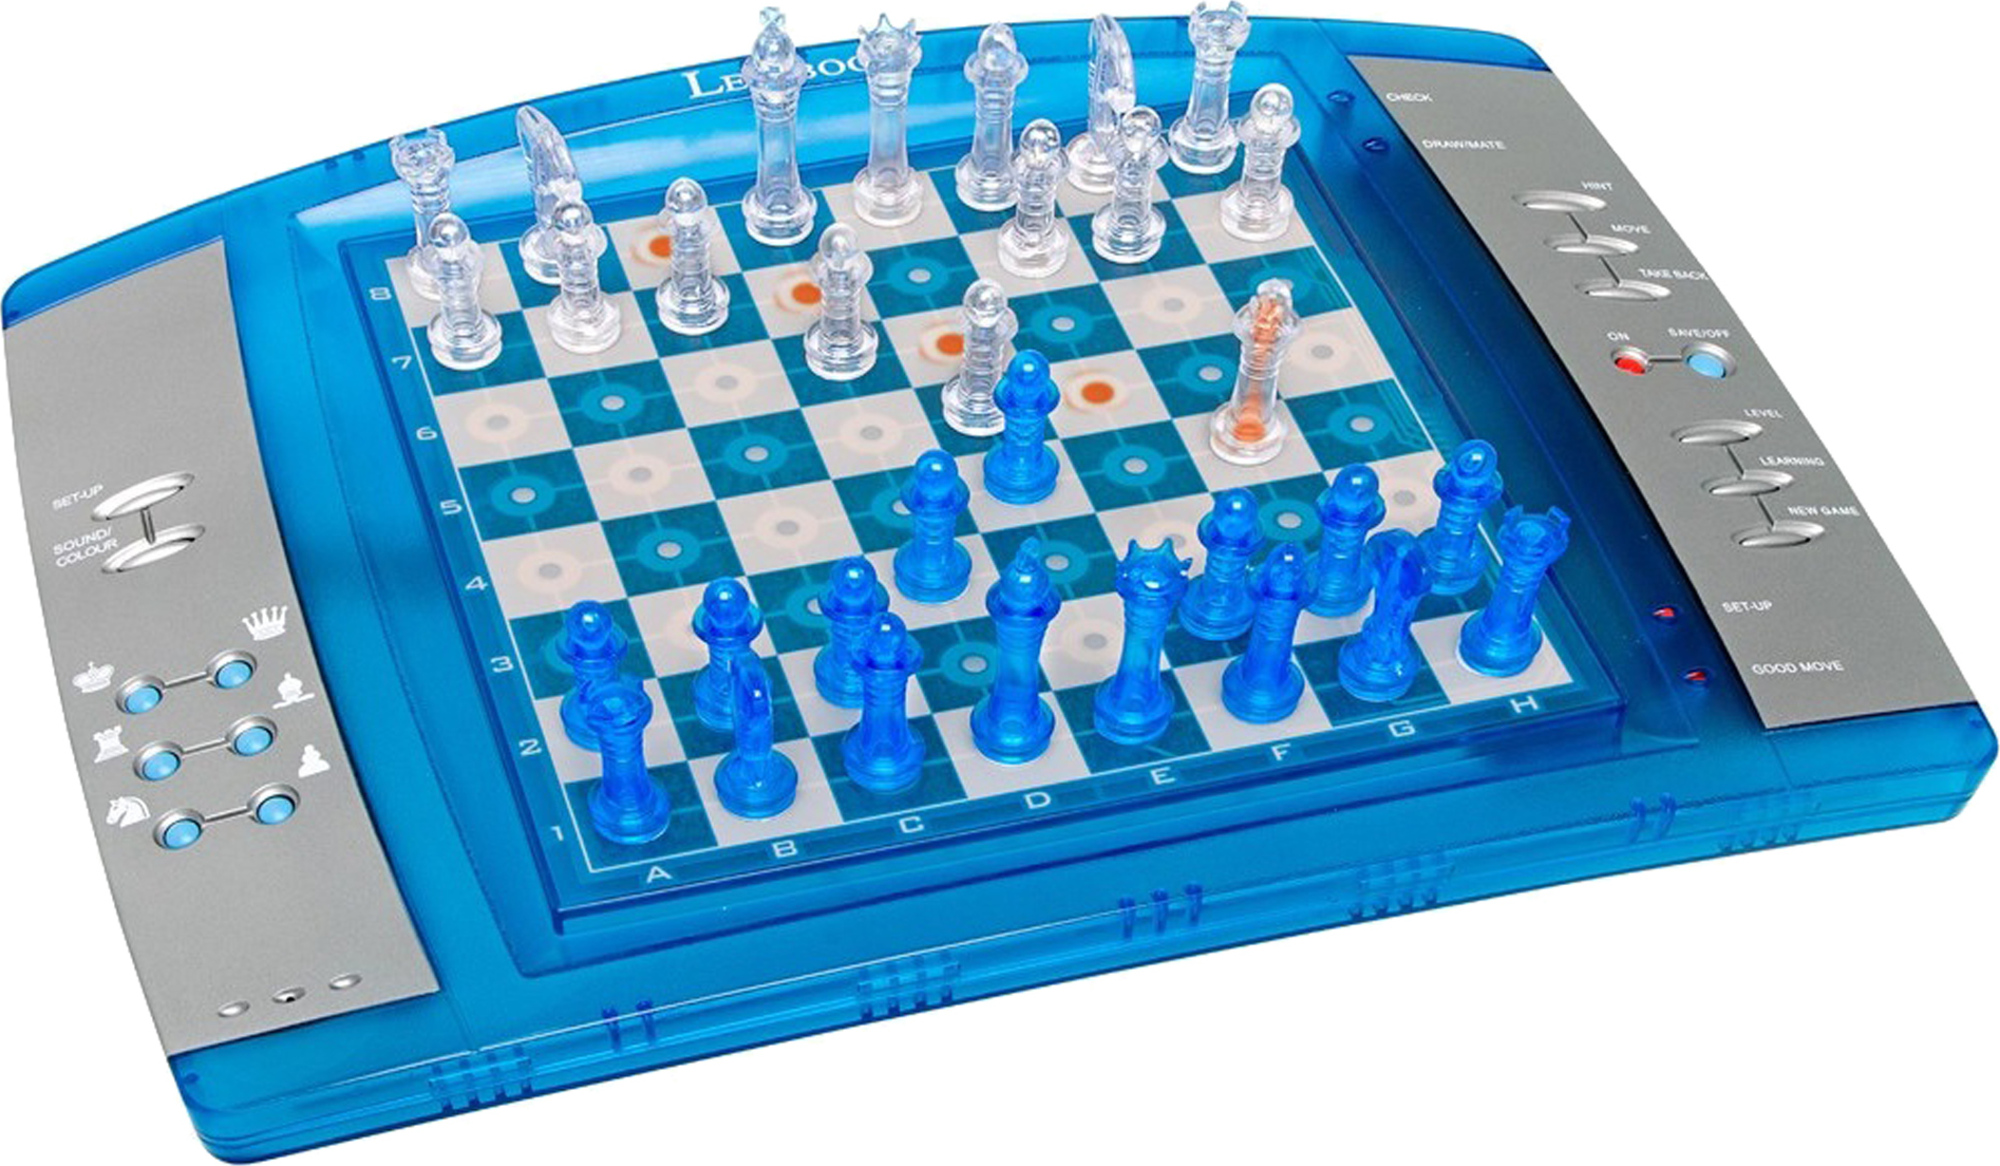 Elektronická šachová hra ChessLight